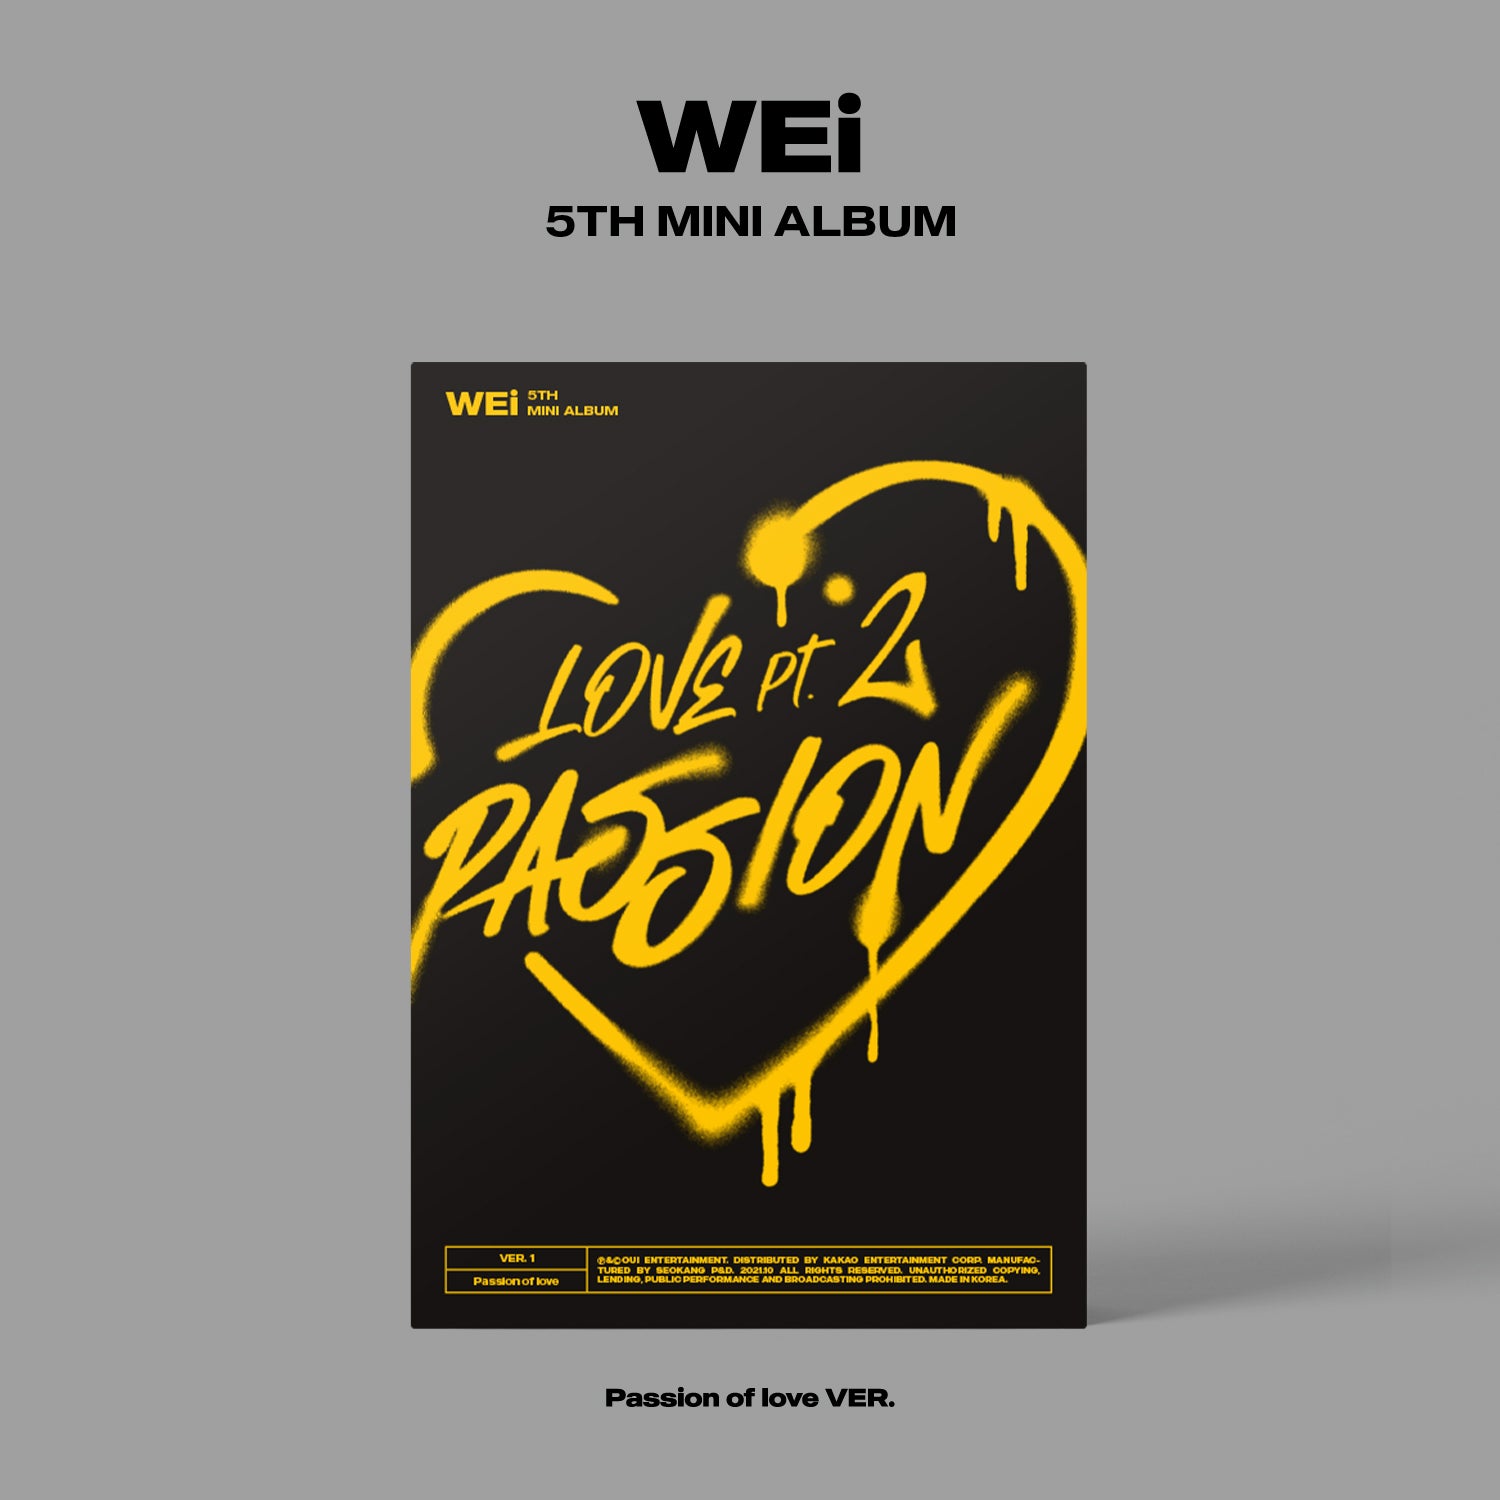 WEI 5TH MINI ALBUM 'LOVE PT.2 : PASSION' PASSION OF LOVE COVER